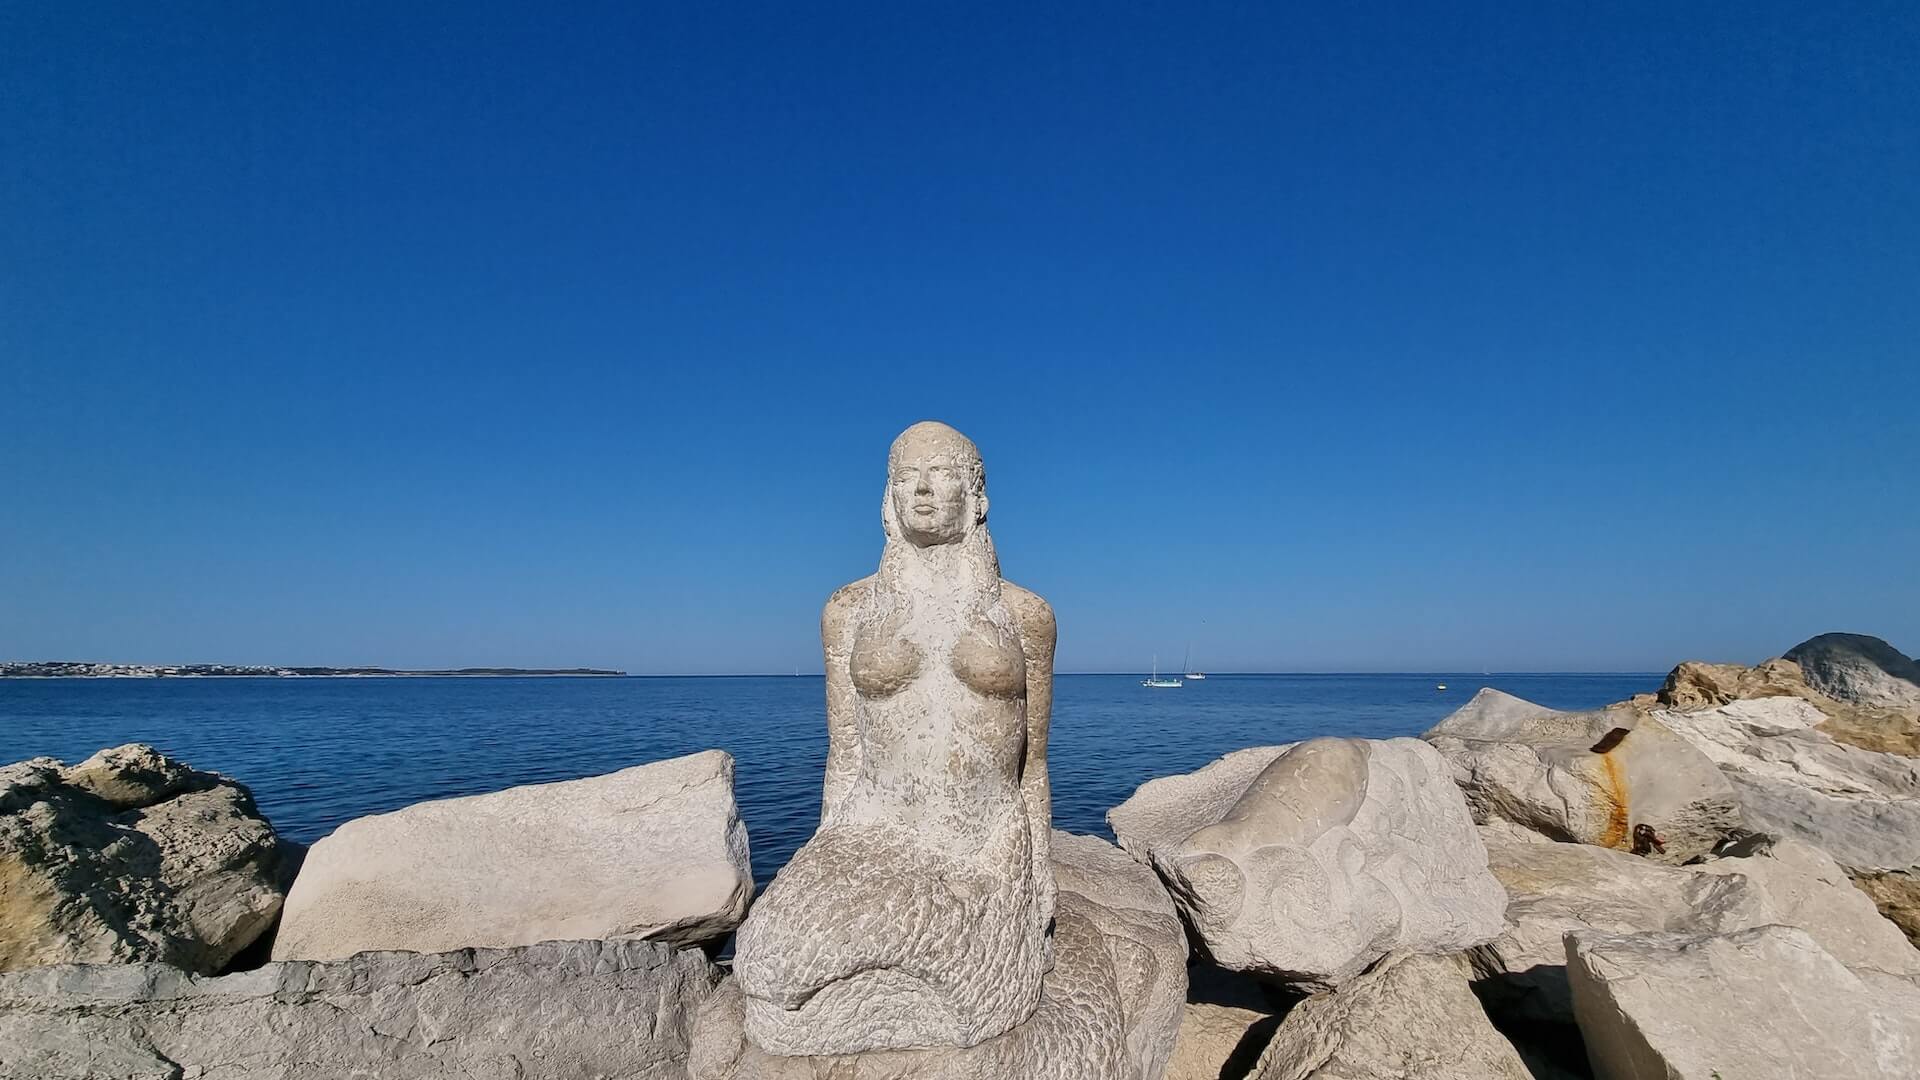 mermaid rock statue